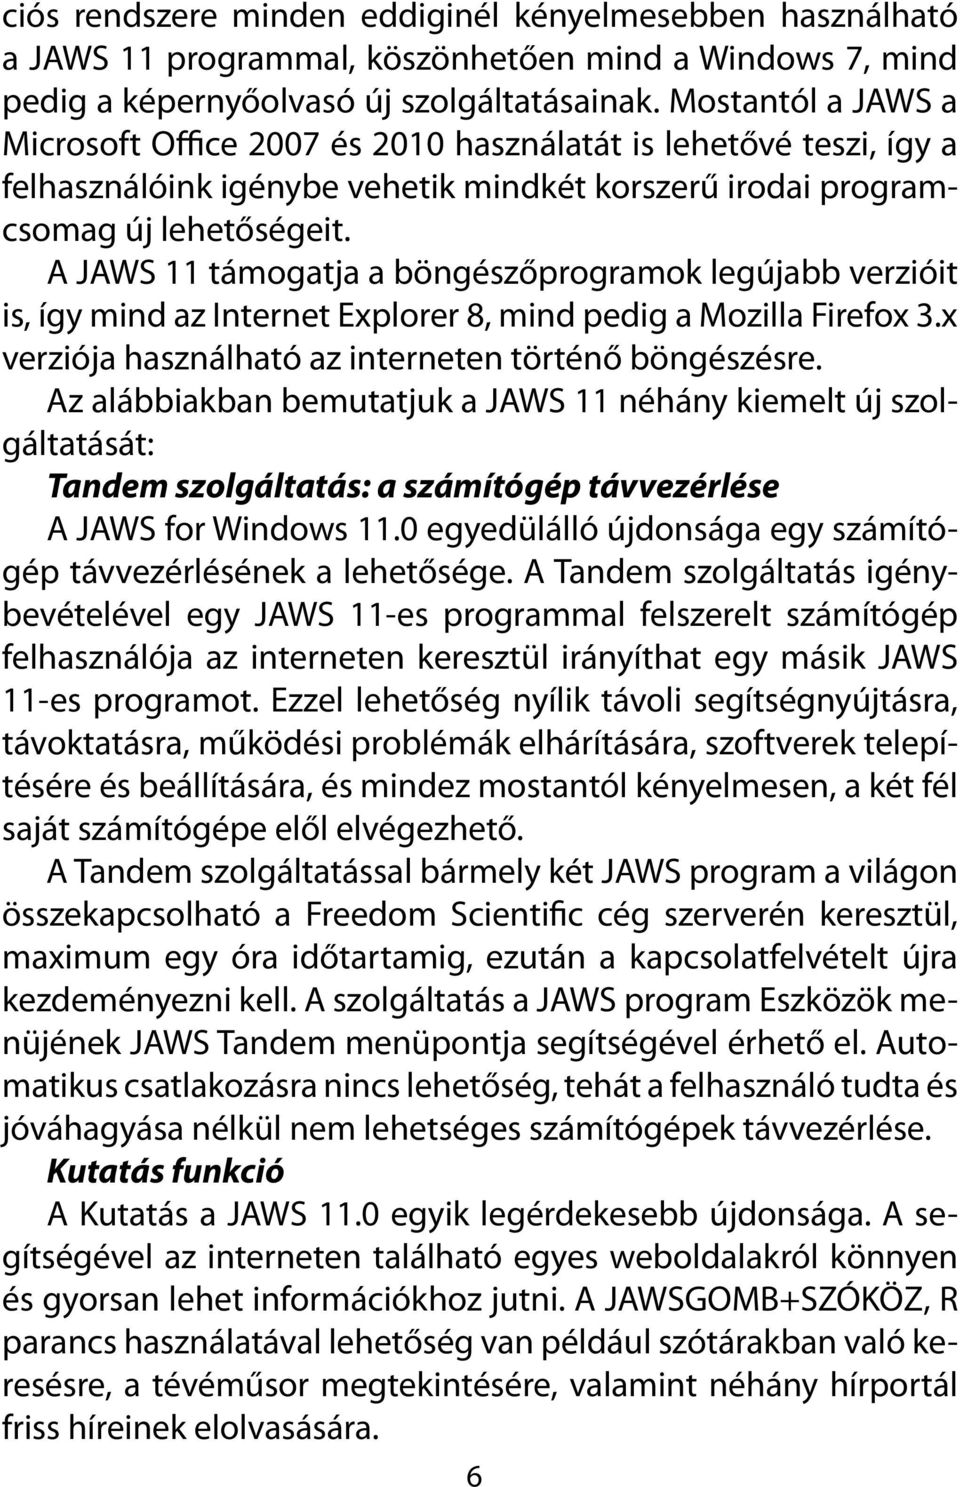 A JAWS 11 támogatja a böngészőprogramok legújabb verzióit is, így mind az Internet Explorer 8, mind pedig a Mozilla Firefox 3.x verziója használható az interneten történő böngészésre.